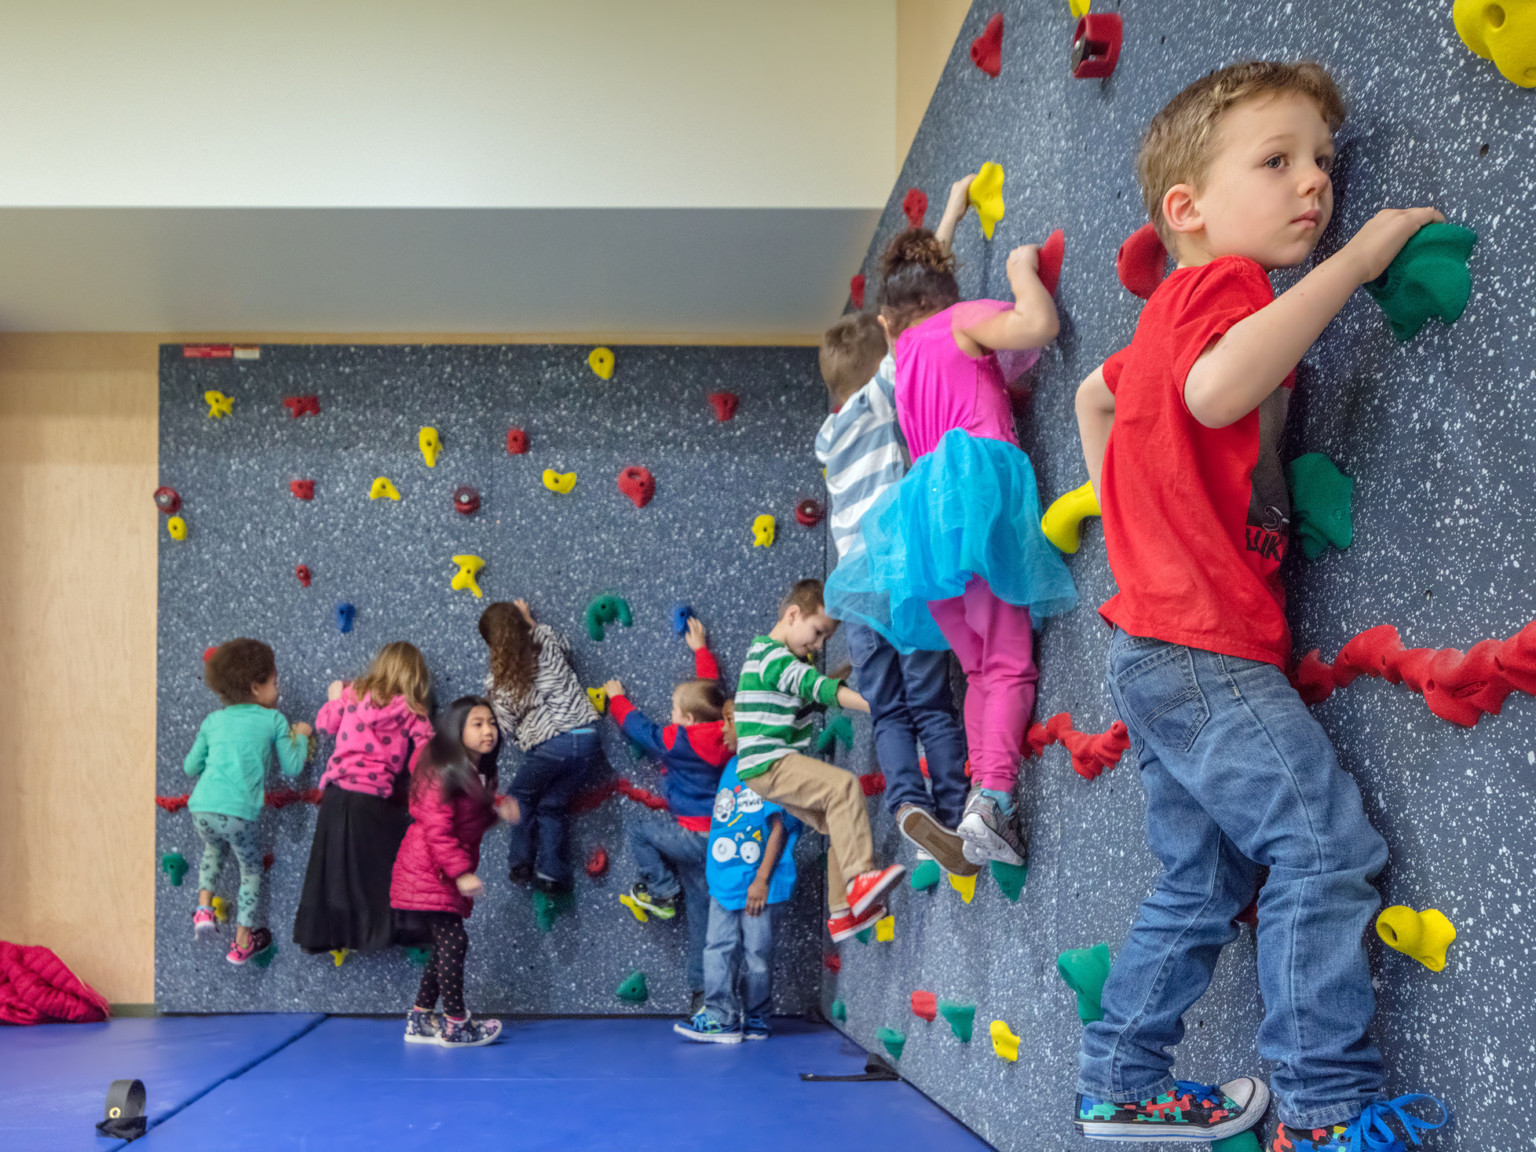 Children using a rock climbing wall above a blue padded mat